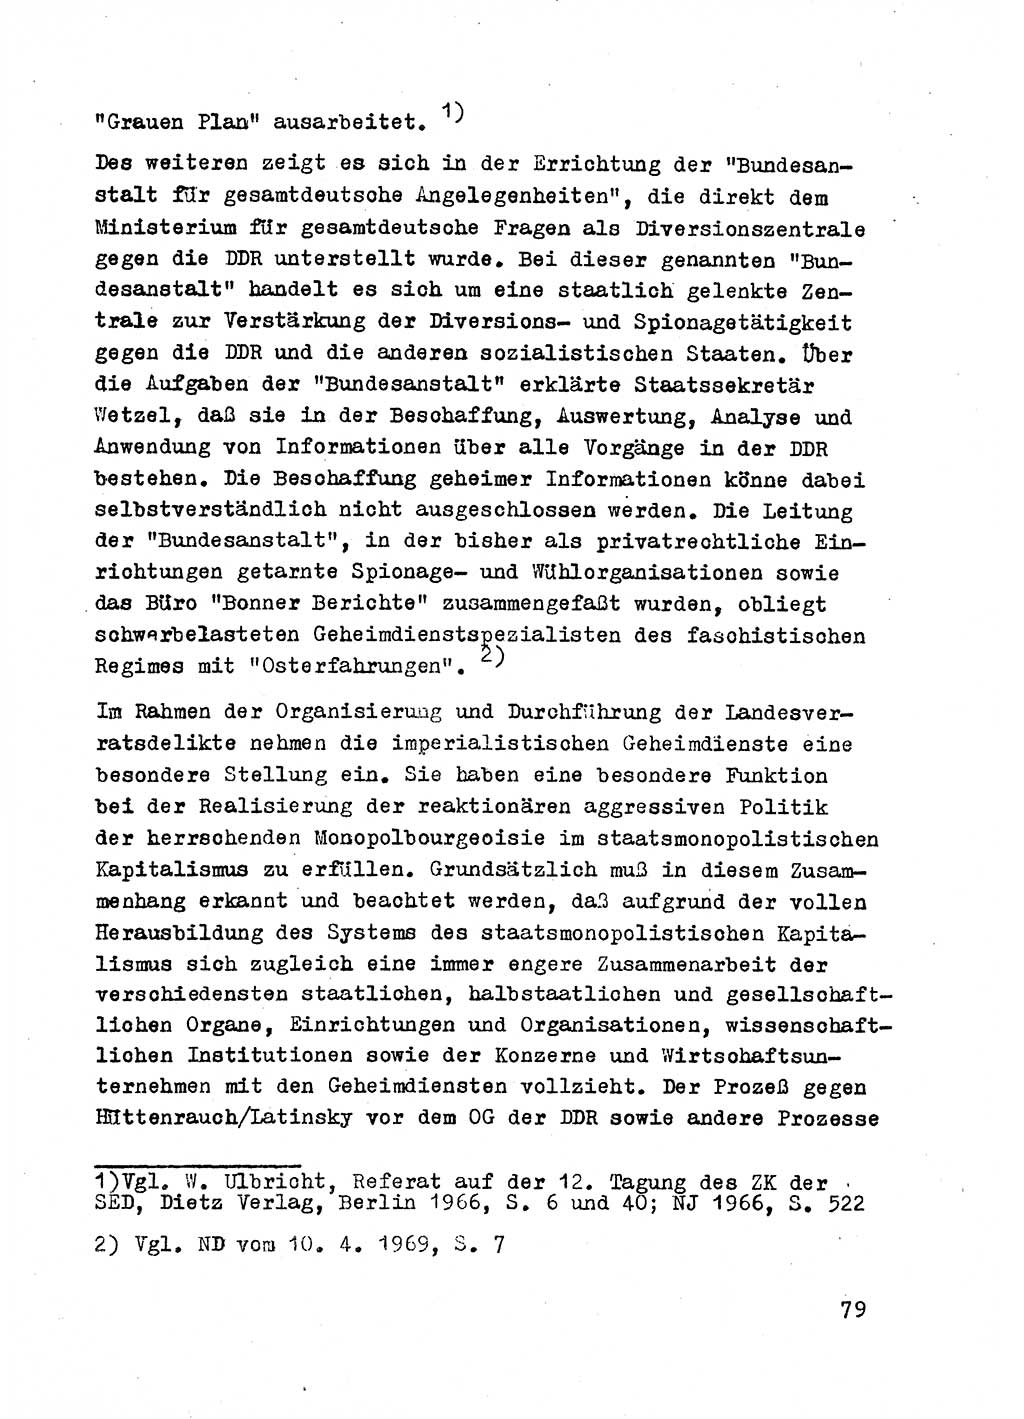 Strafrecht der DDR (Deutsche Demokratische Republik), Besonderer Teil, Lehrmaterial, Heft 2 1969, Seite 79 (Strafr. DDR BT Lehrmat. H. 2 1969, S. 79)